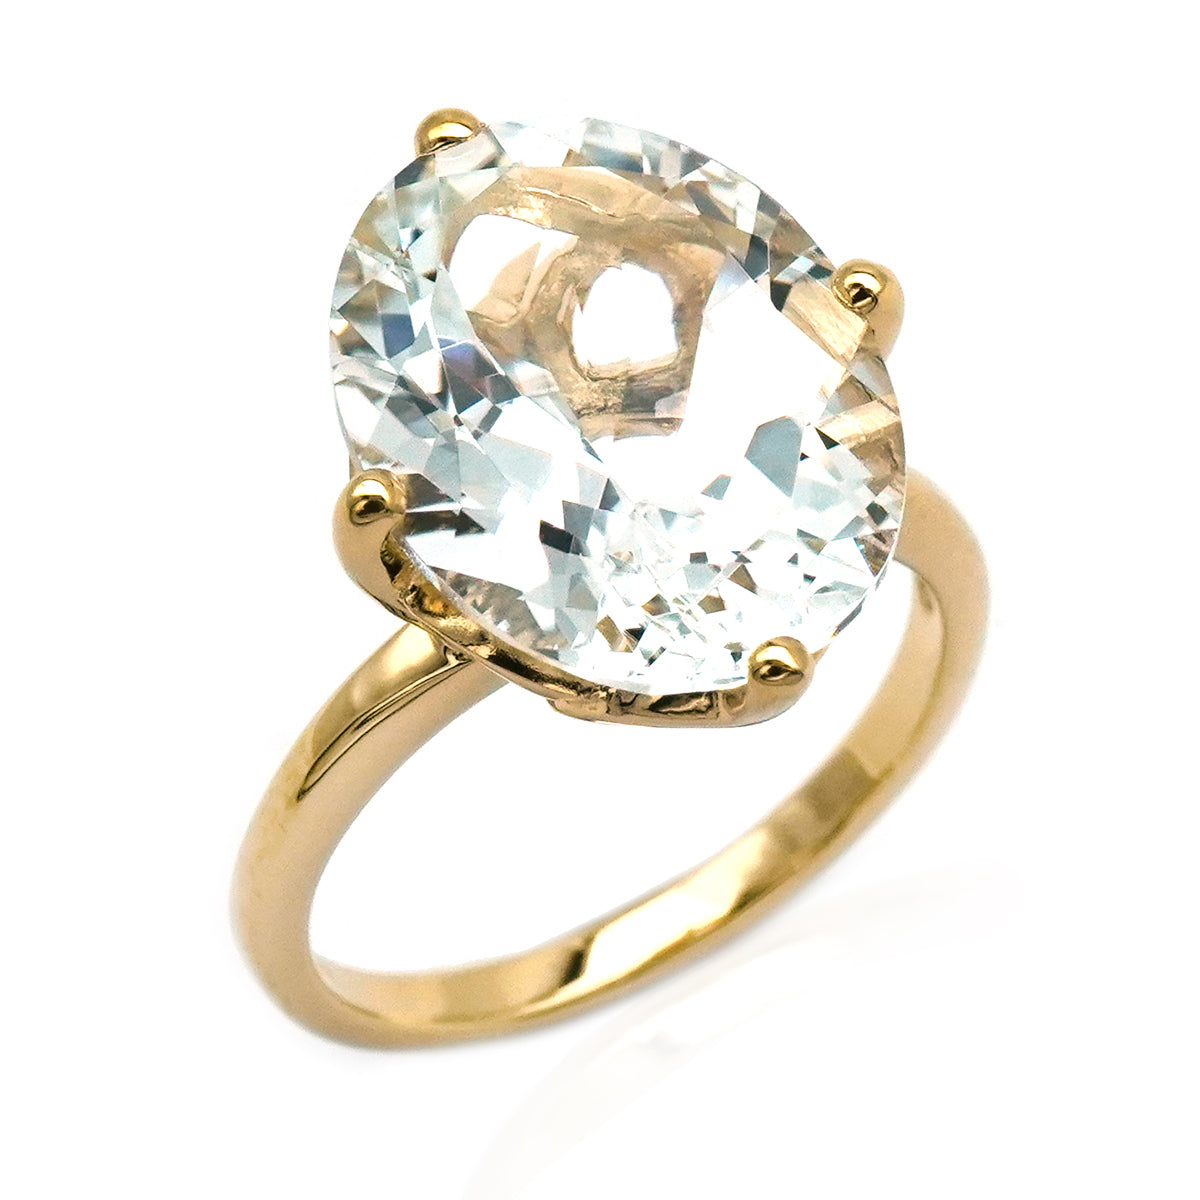 Oval cut white topaz gemstone ring.